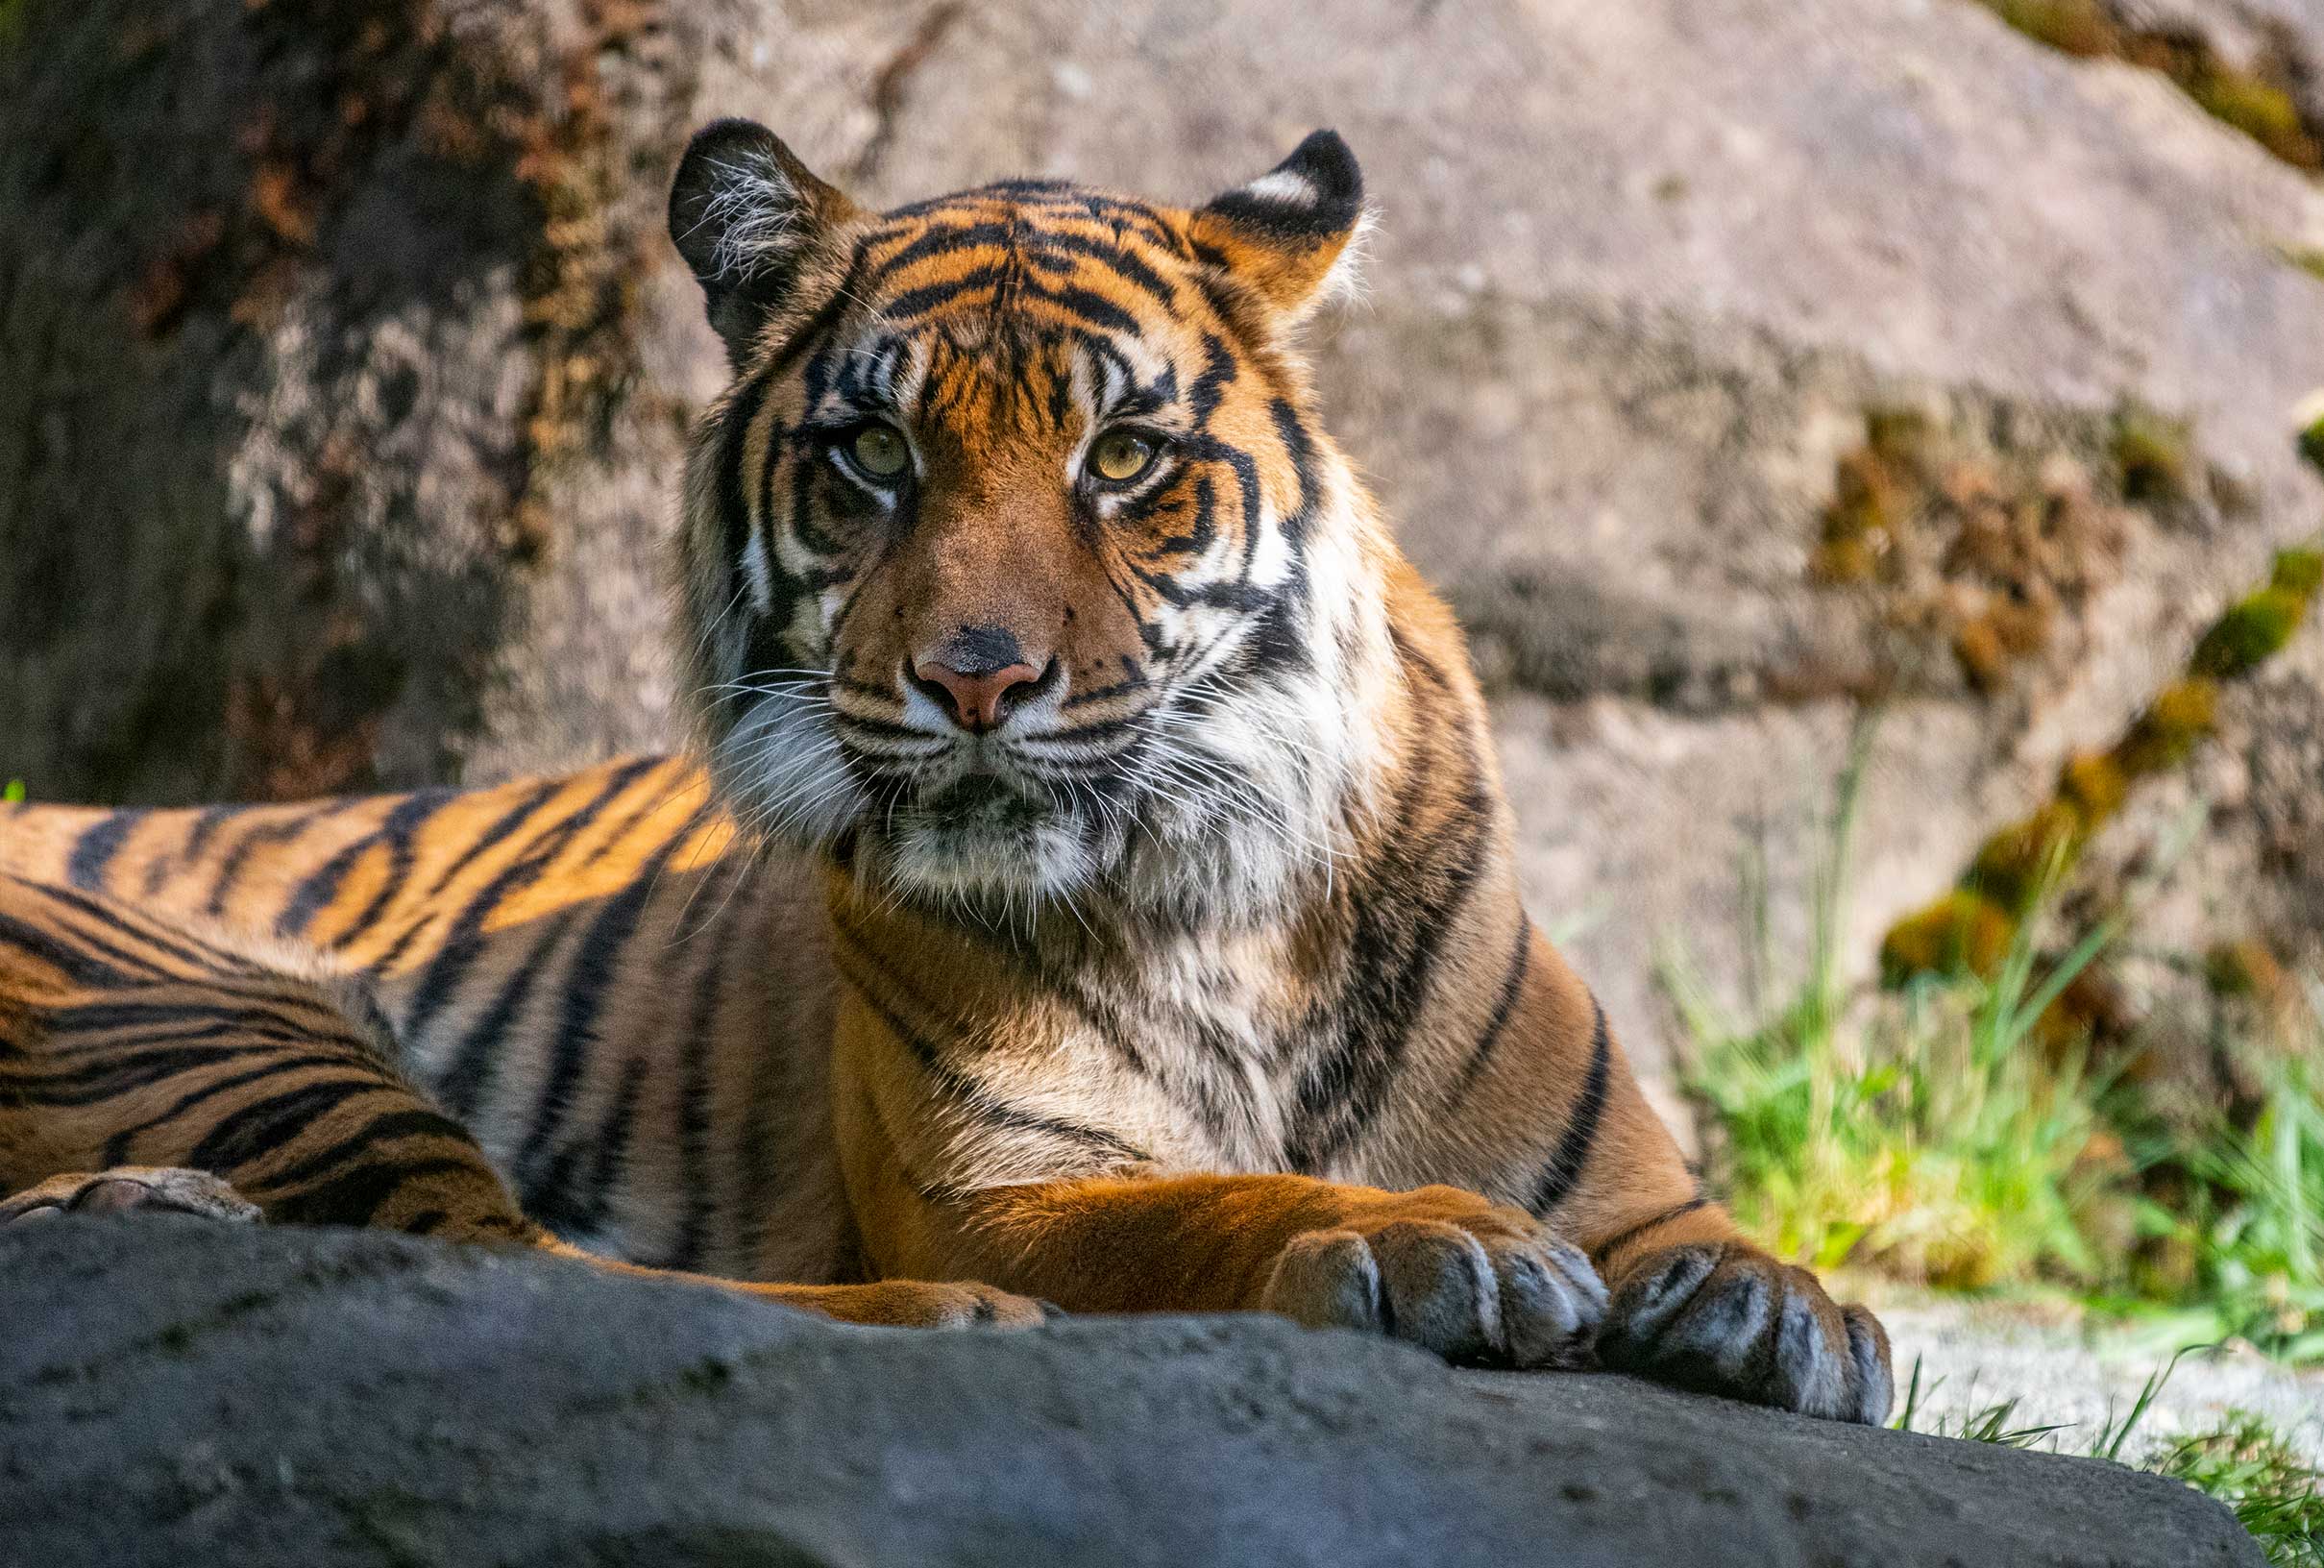 Tiger-kali-at-Zoo